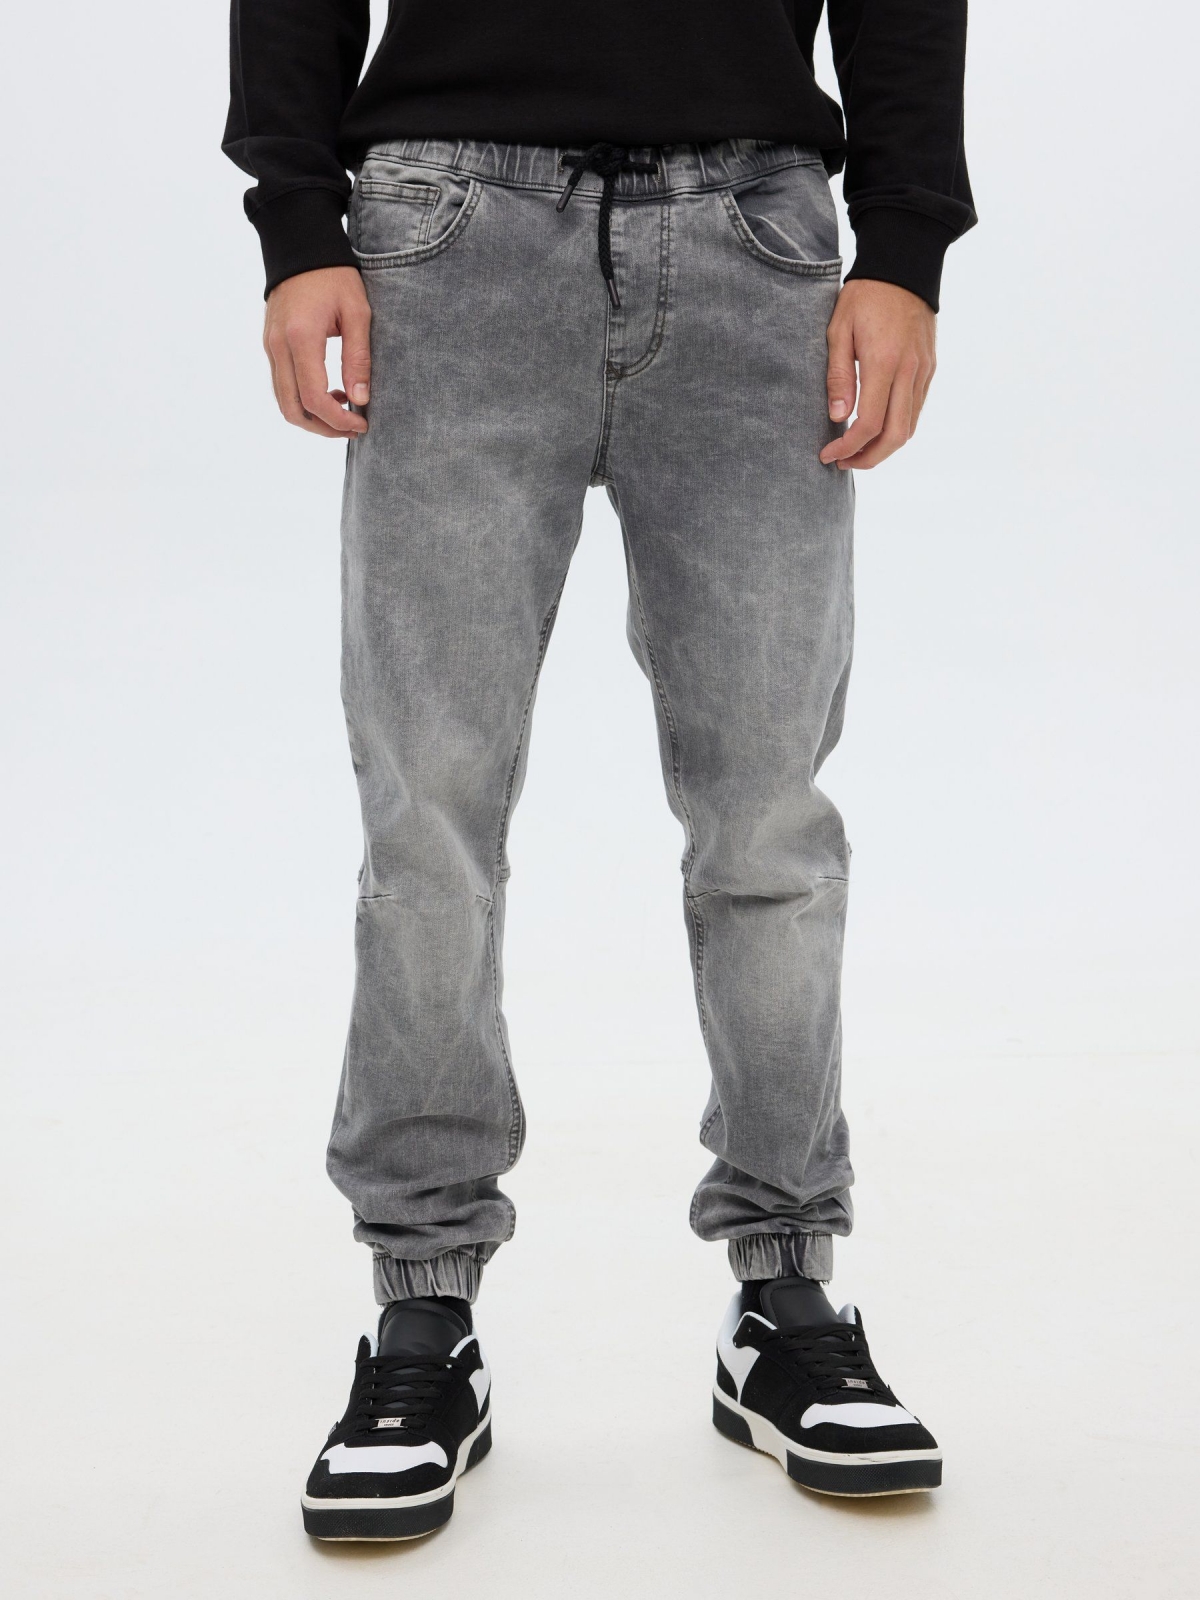 Pantalon jogger gris oscuro vista media trasera